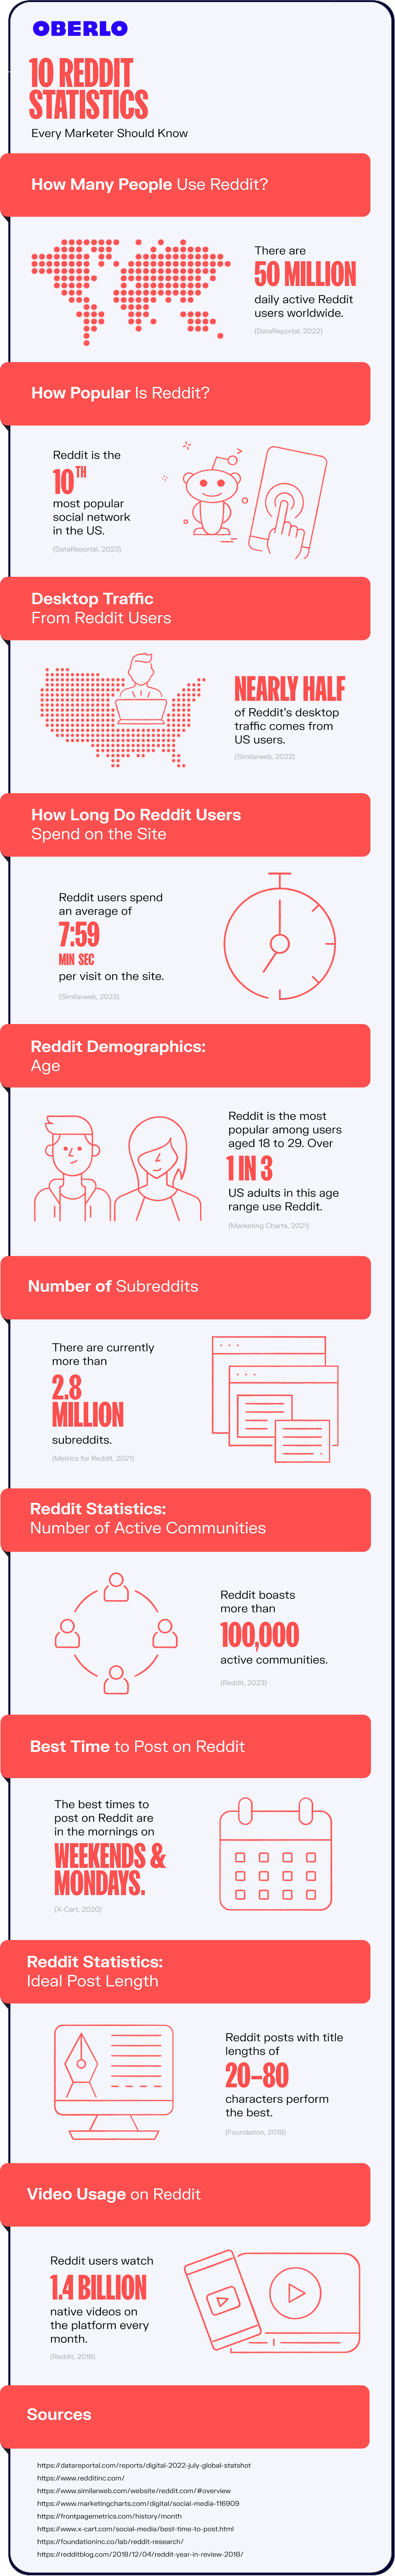 reddit statistics full graphic